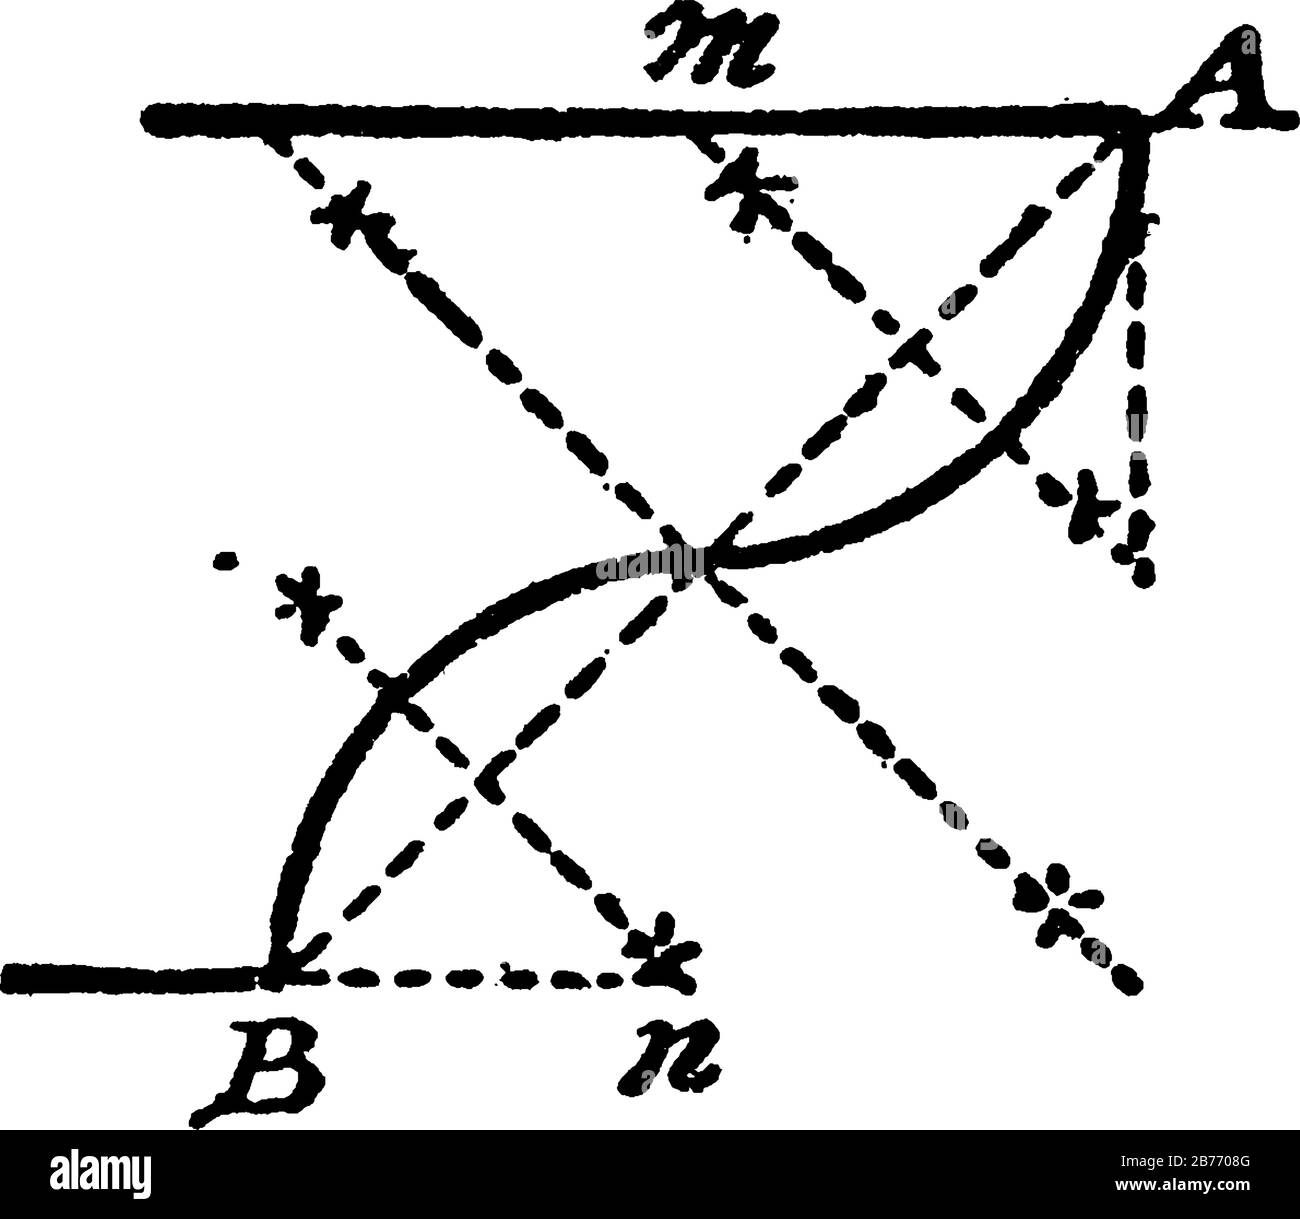 Aufbau eines Talons oder zweier Kreisbögen, die sich tangential machen und zwei parallele Linien im rechten Winkel in A- und B-Zeichnung, Vintage-Linie, treffen Stock Vektor